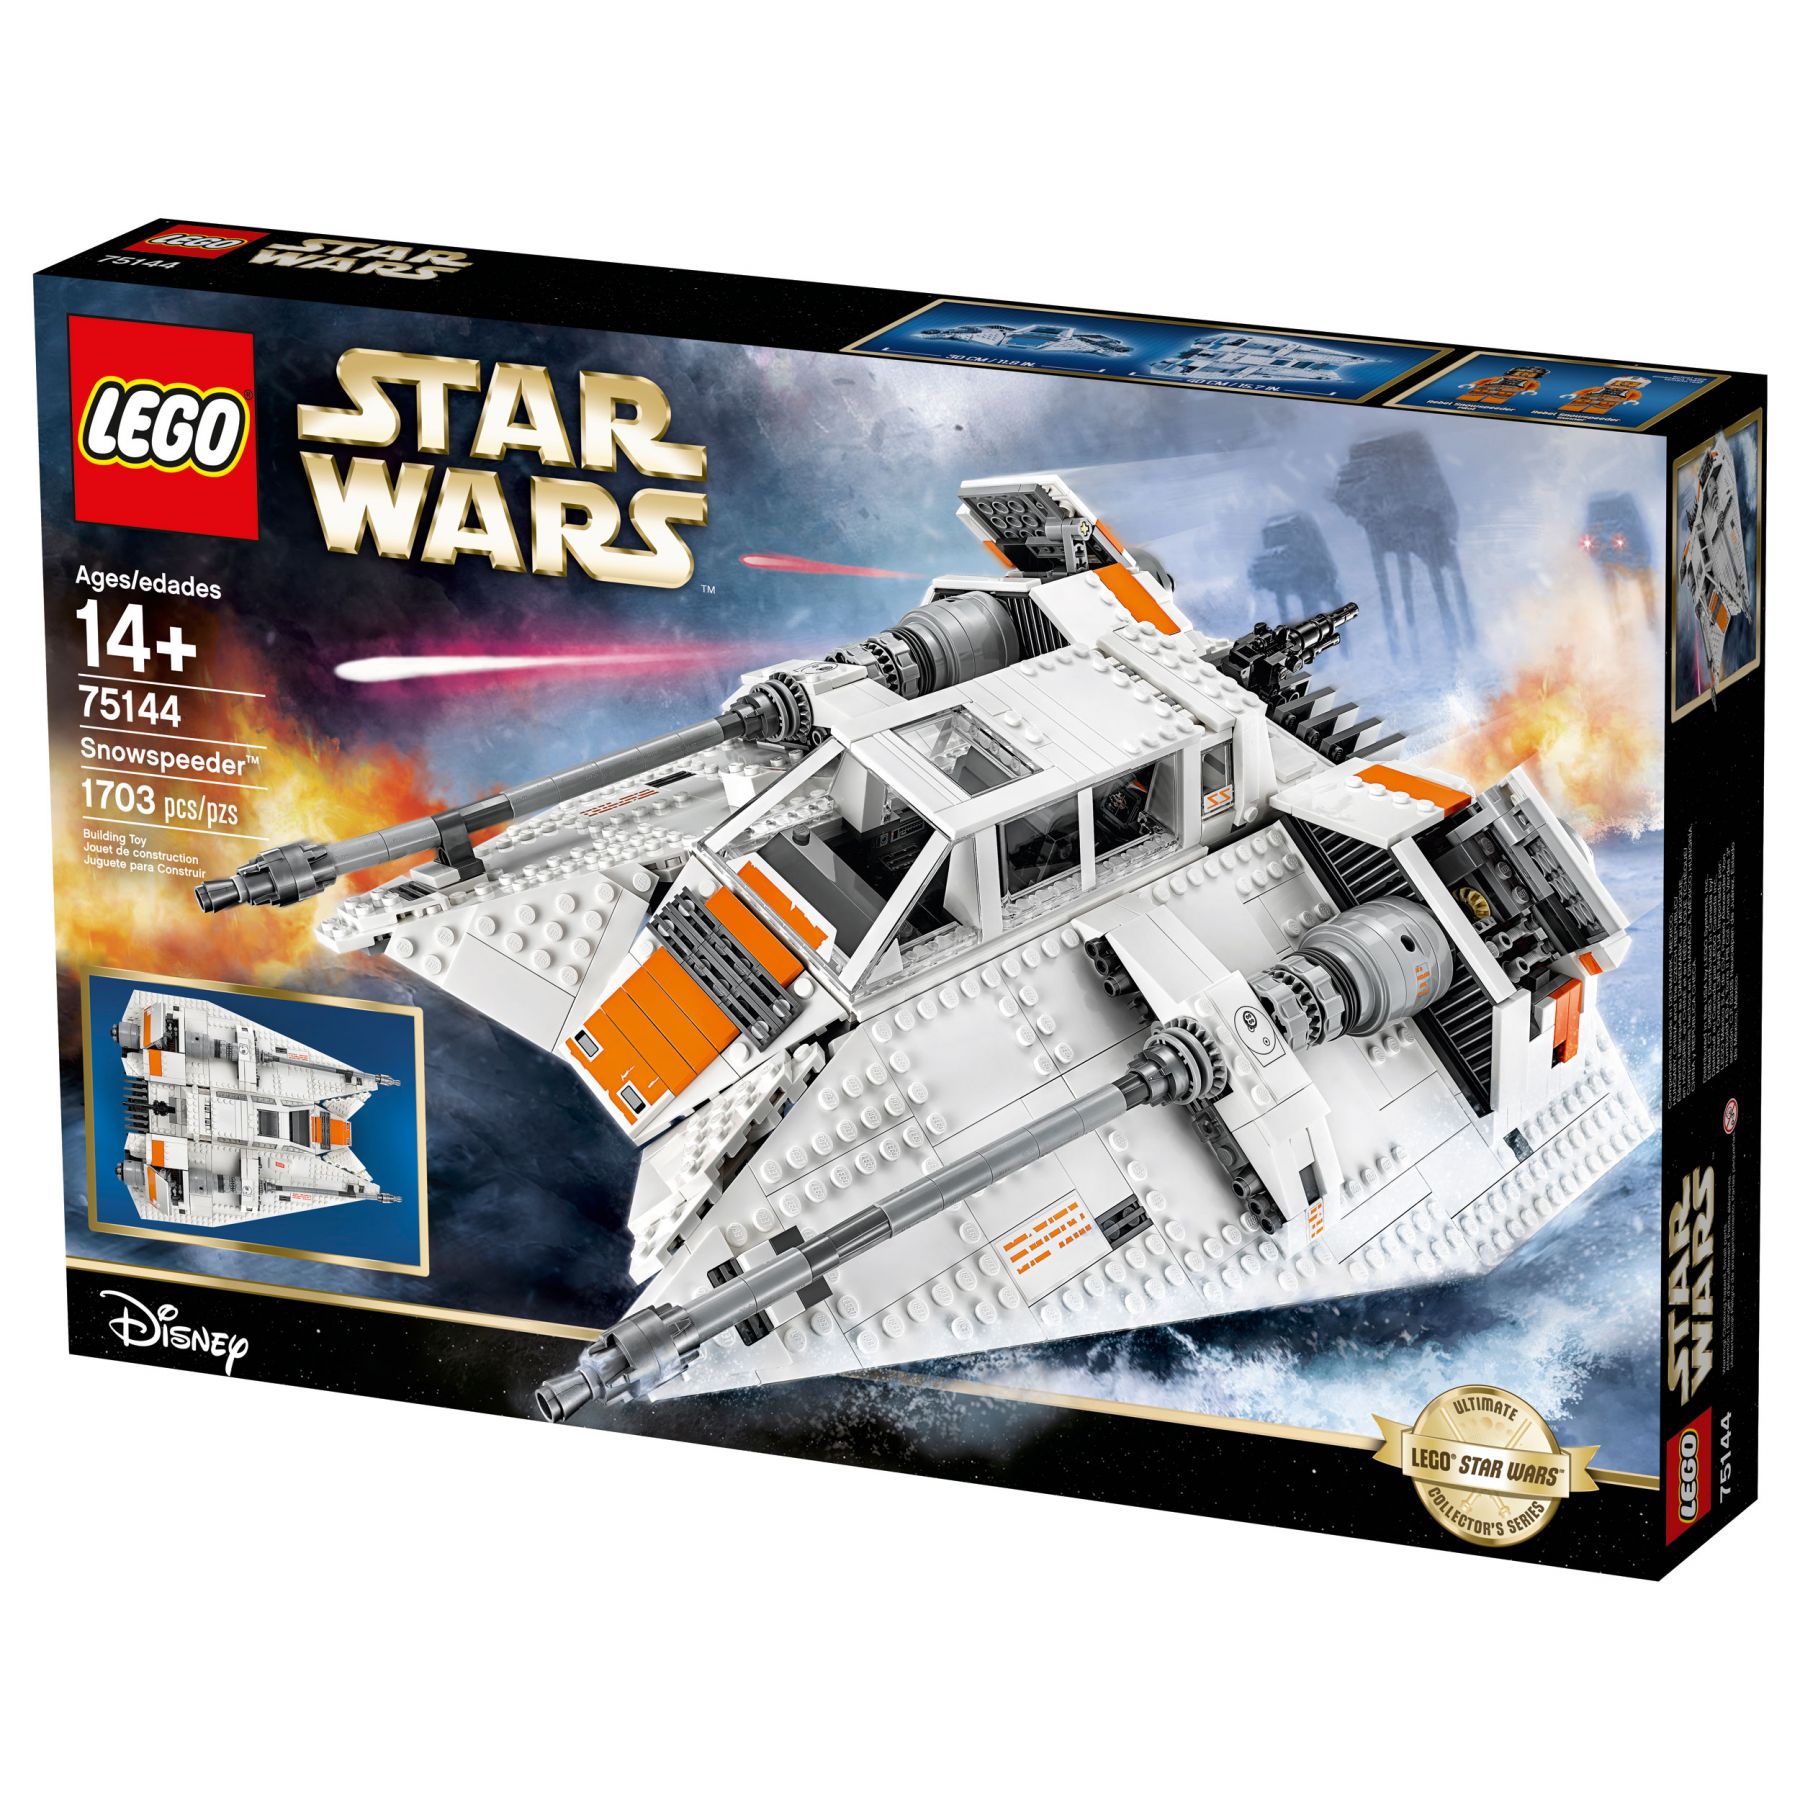 LEGO Star Wars 75144 Snowspeeder™ LEGO_Star_Wars_75144_Snowspeeder_UCS_Box1.jpg